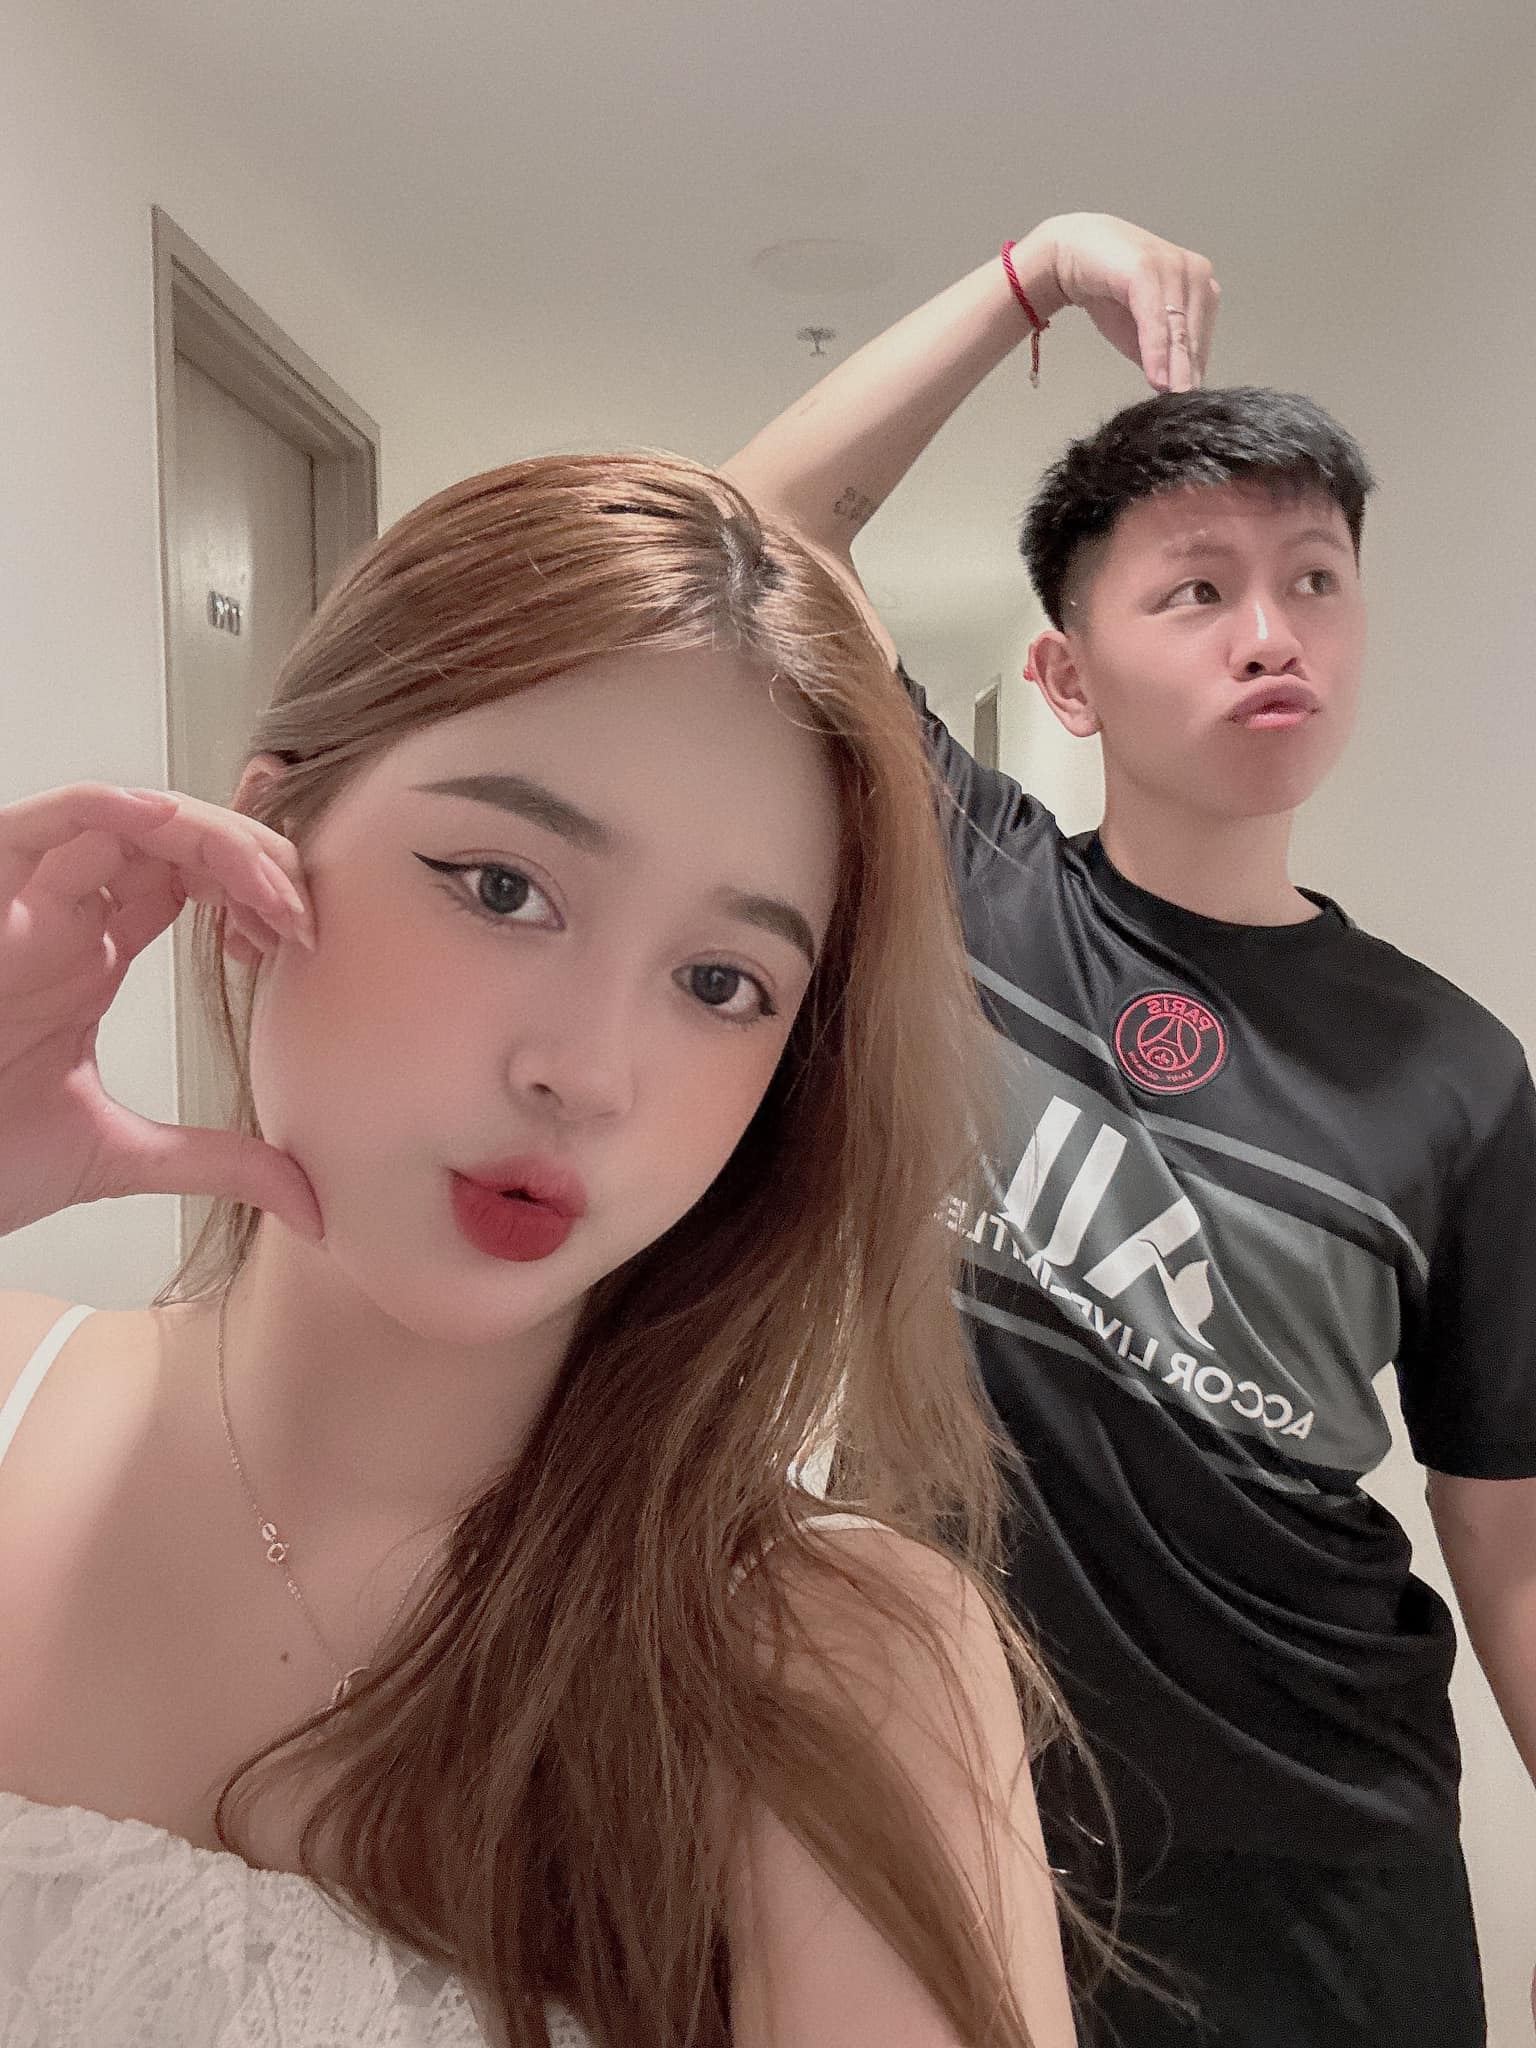 Cầu thủ Việt và vợ hot girl bị 'camera giấu kín' bóc trần hình ảnh 'khó nói', khác xa lúc trên sân - ảnh 5